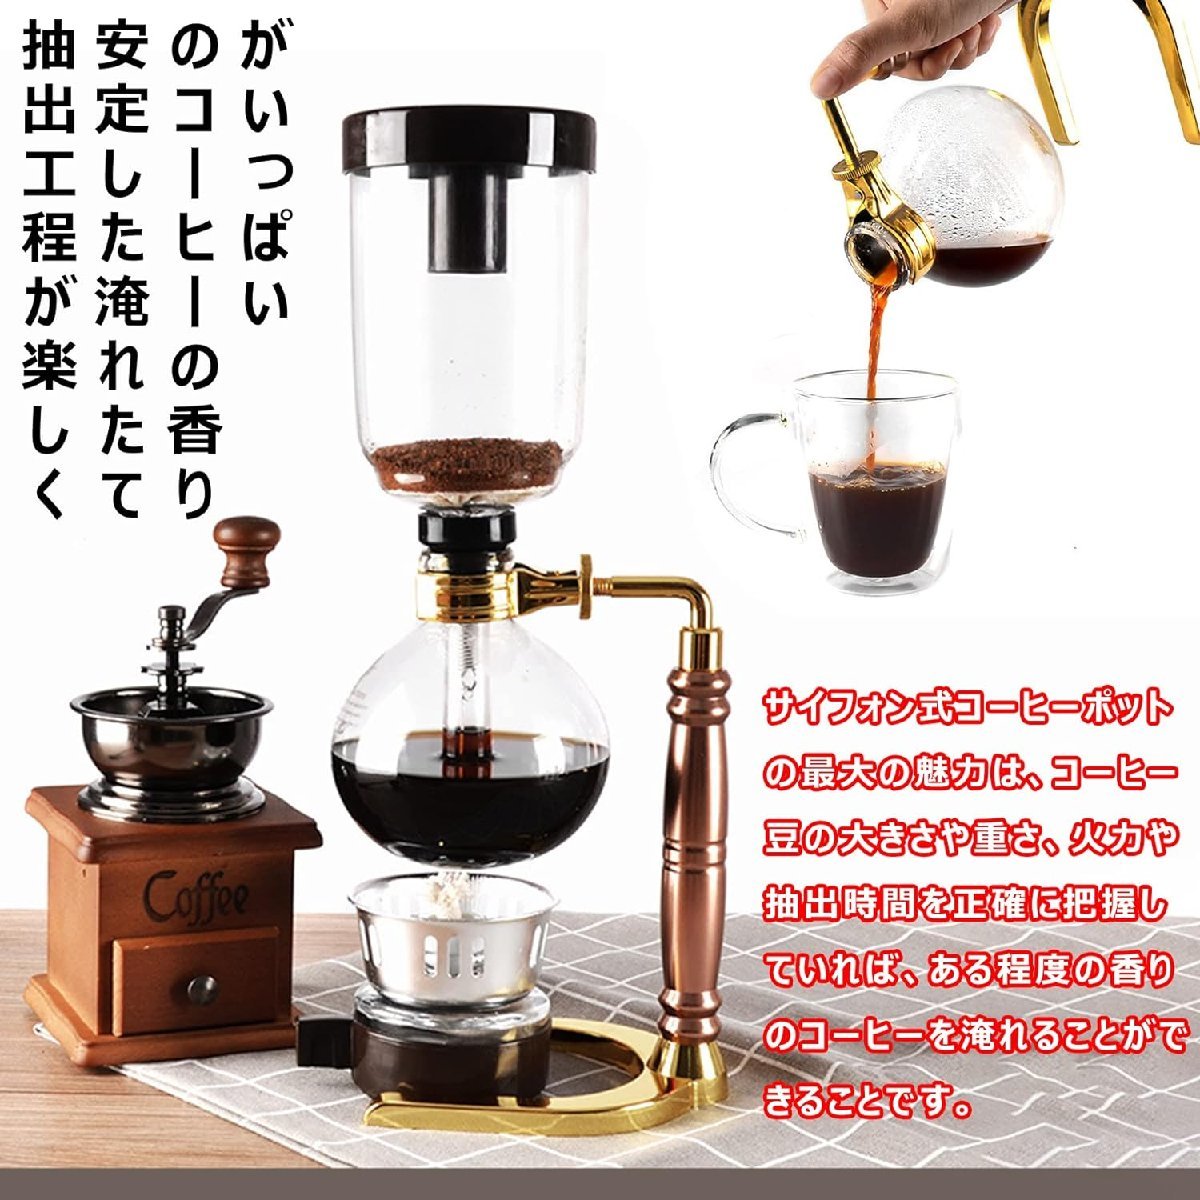 サイフォン式コーヒーメーカー 器具 5人用 コーヒー サイフォン式 耐久性耐熱 コーヒー加熱器具 480ml_画像7